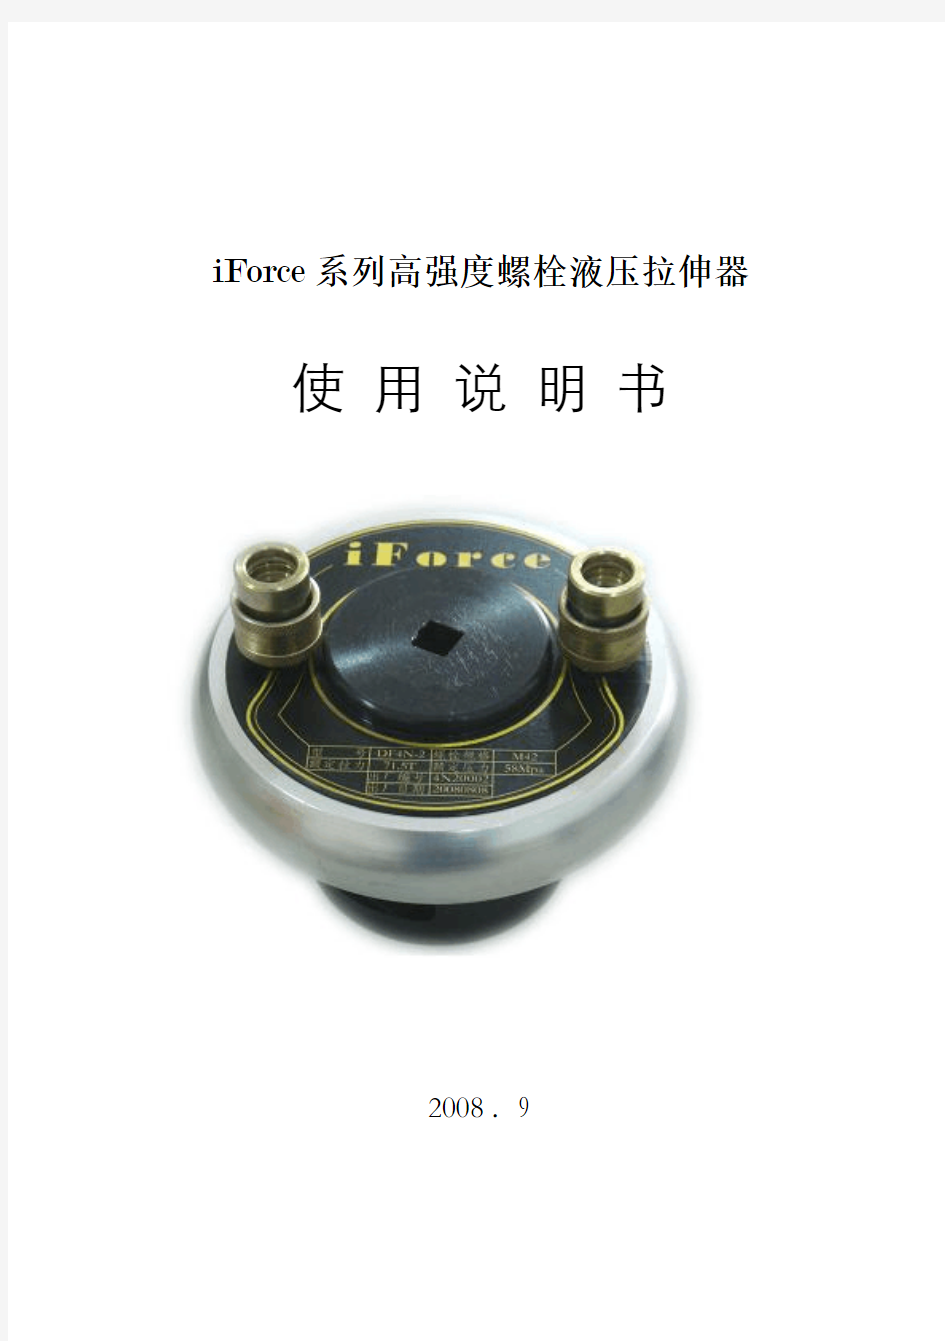 iforce系列高强度螺栓液压拉伸器使用说明书新要点